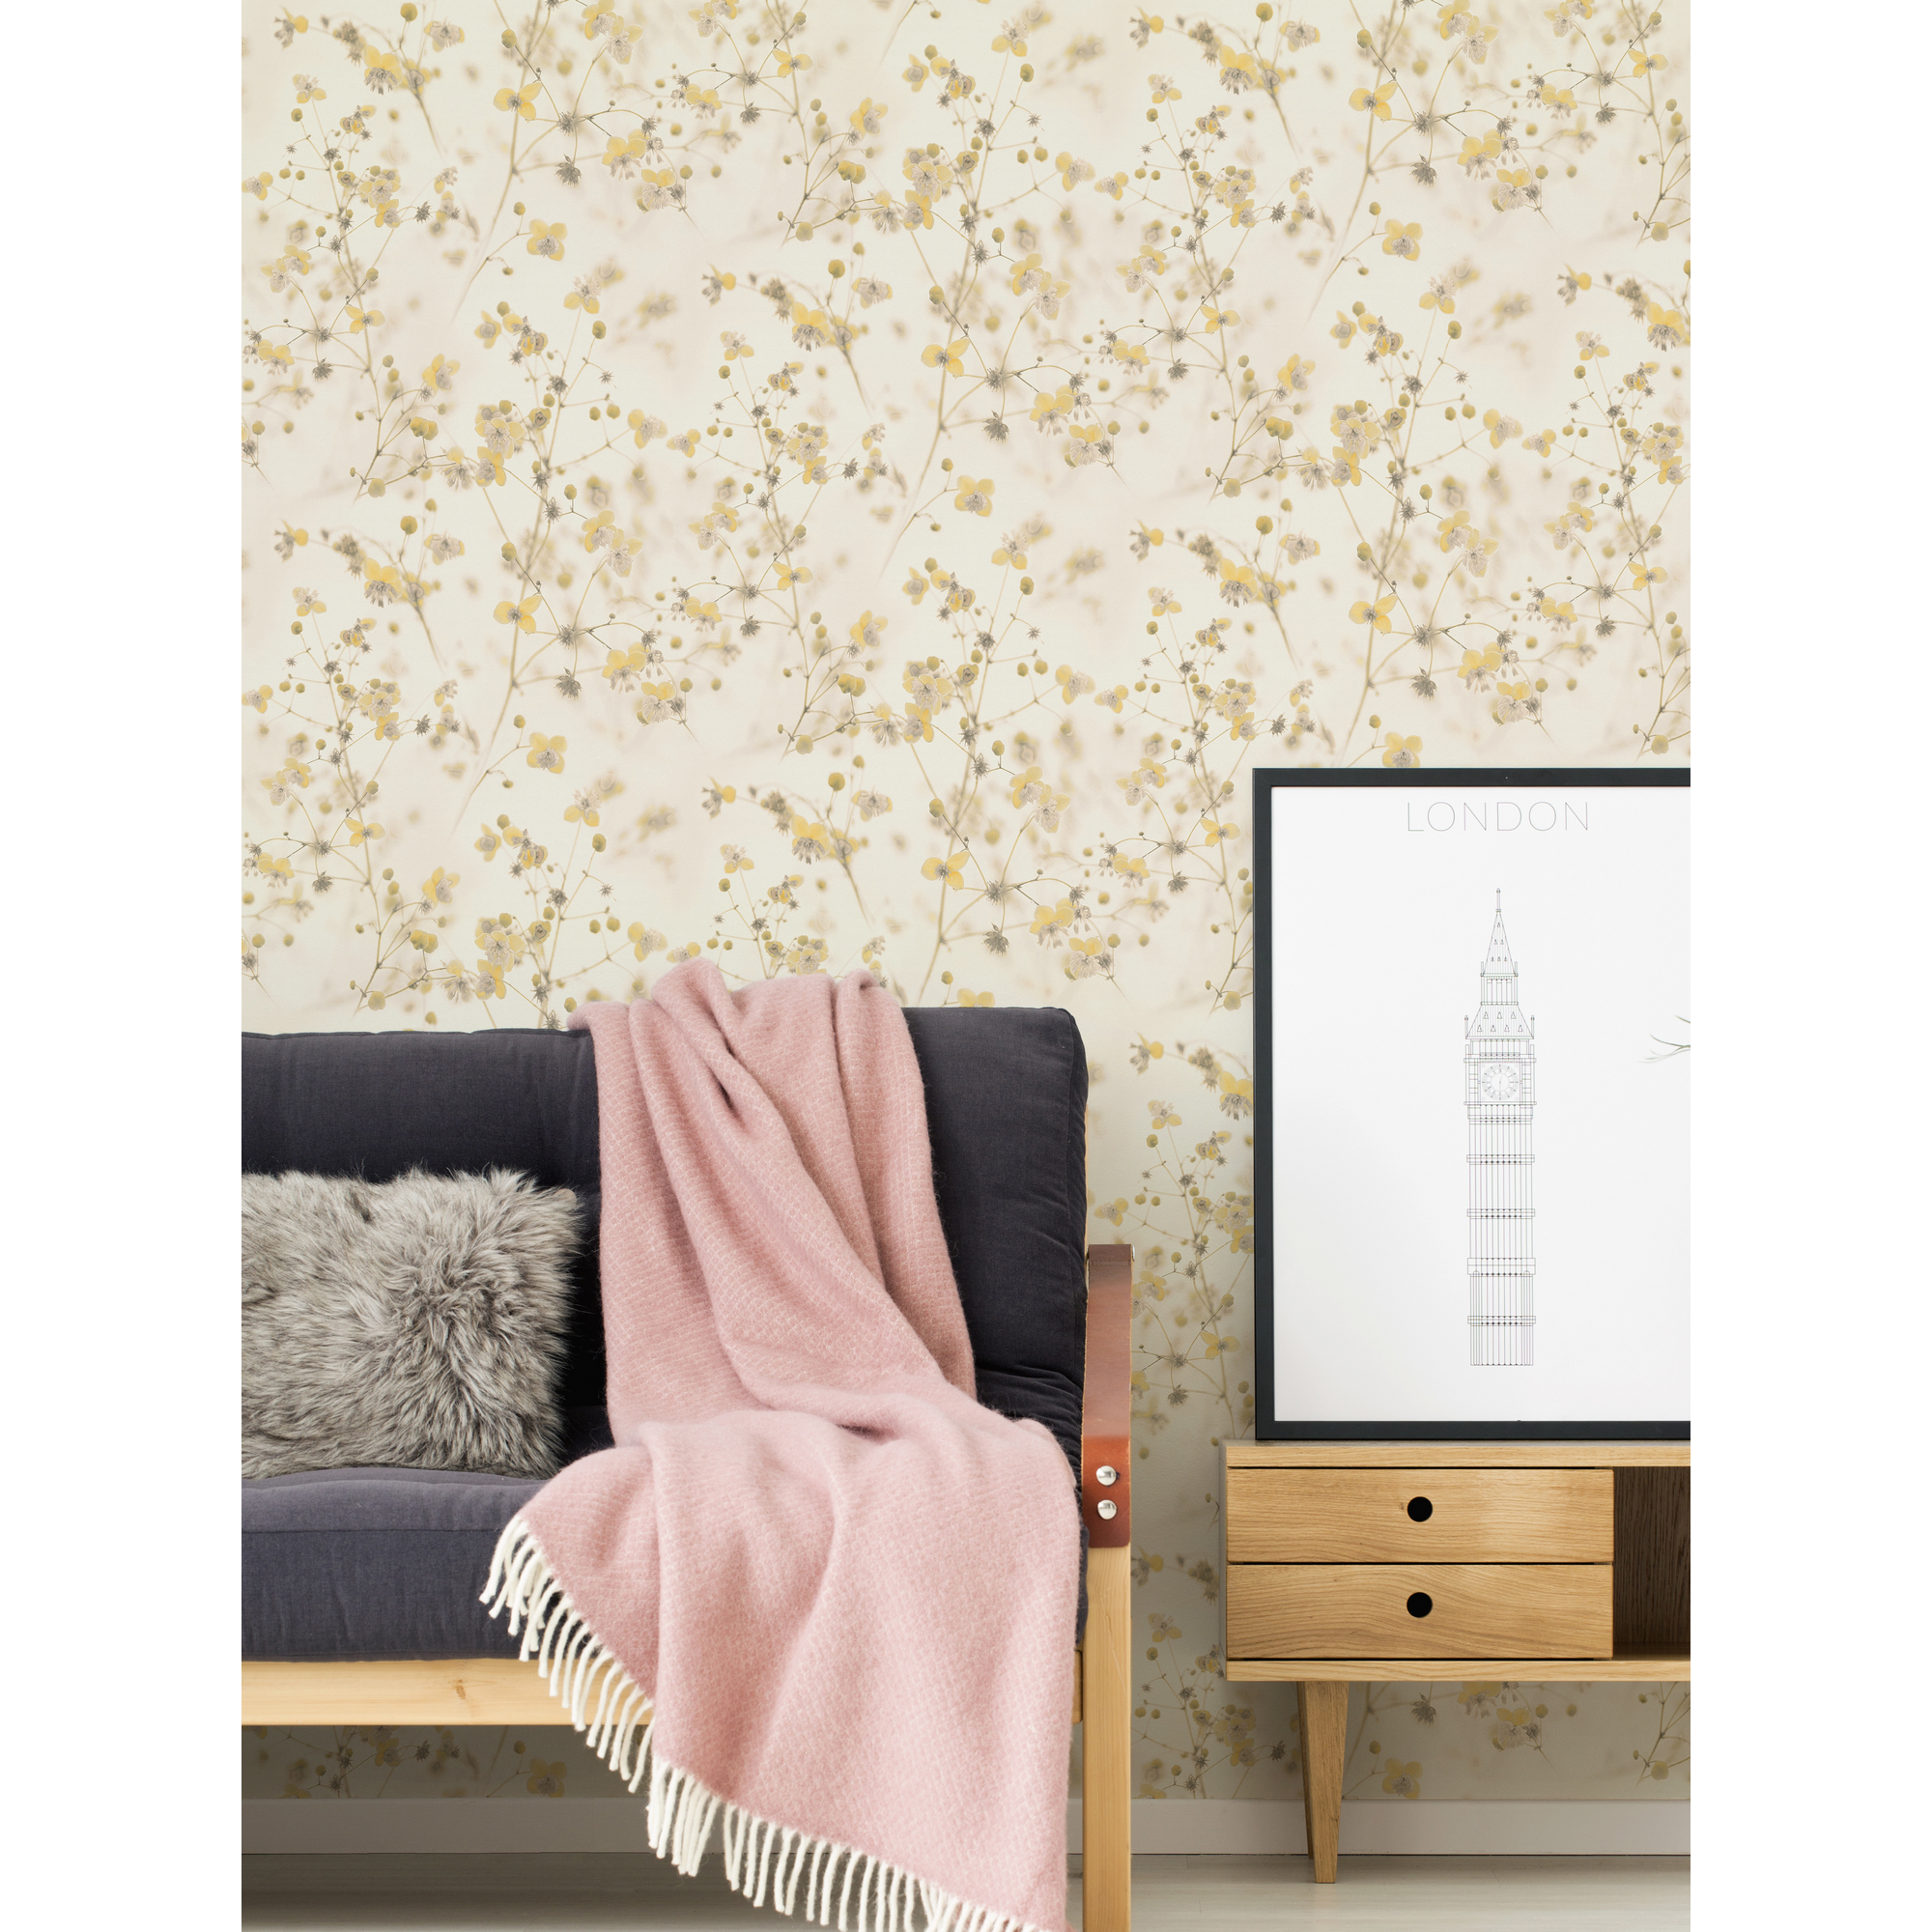 Vliestapete 'Pint Walls' Blumen gelb/weiß 10,05 x 0,53 m + product picture